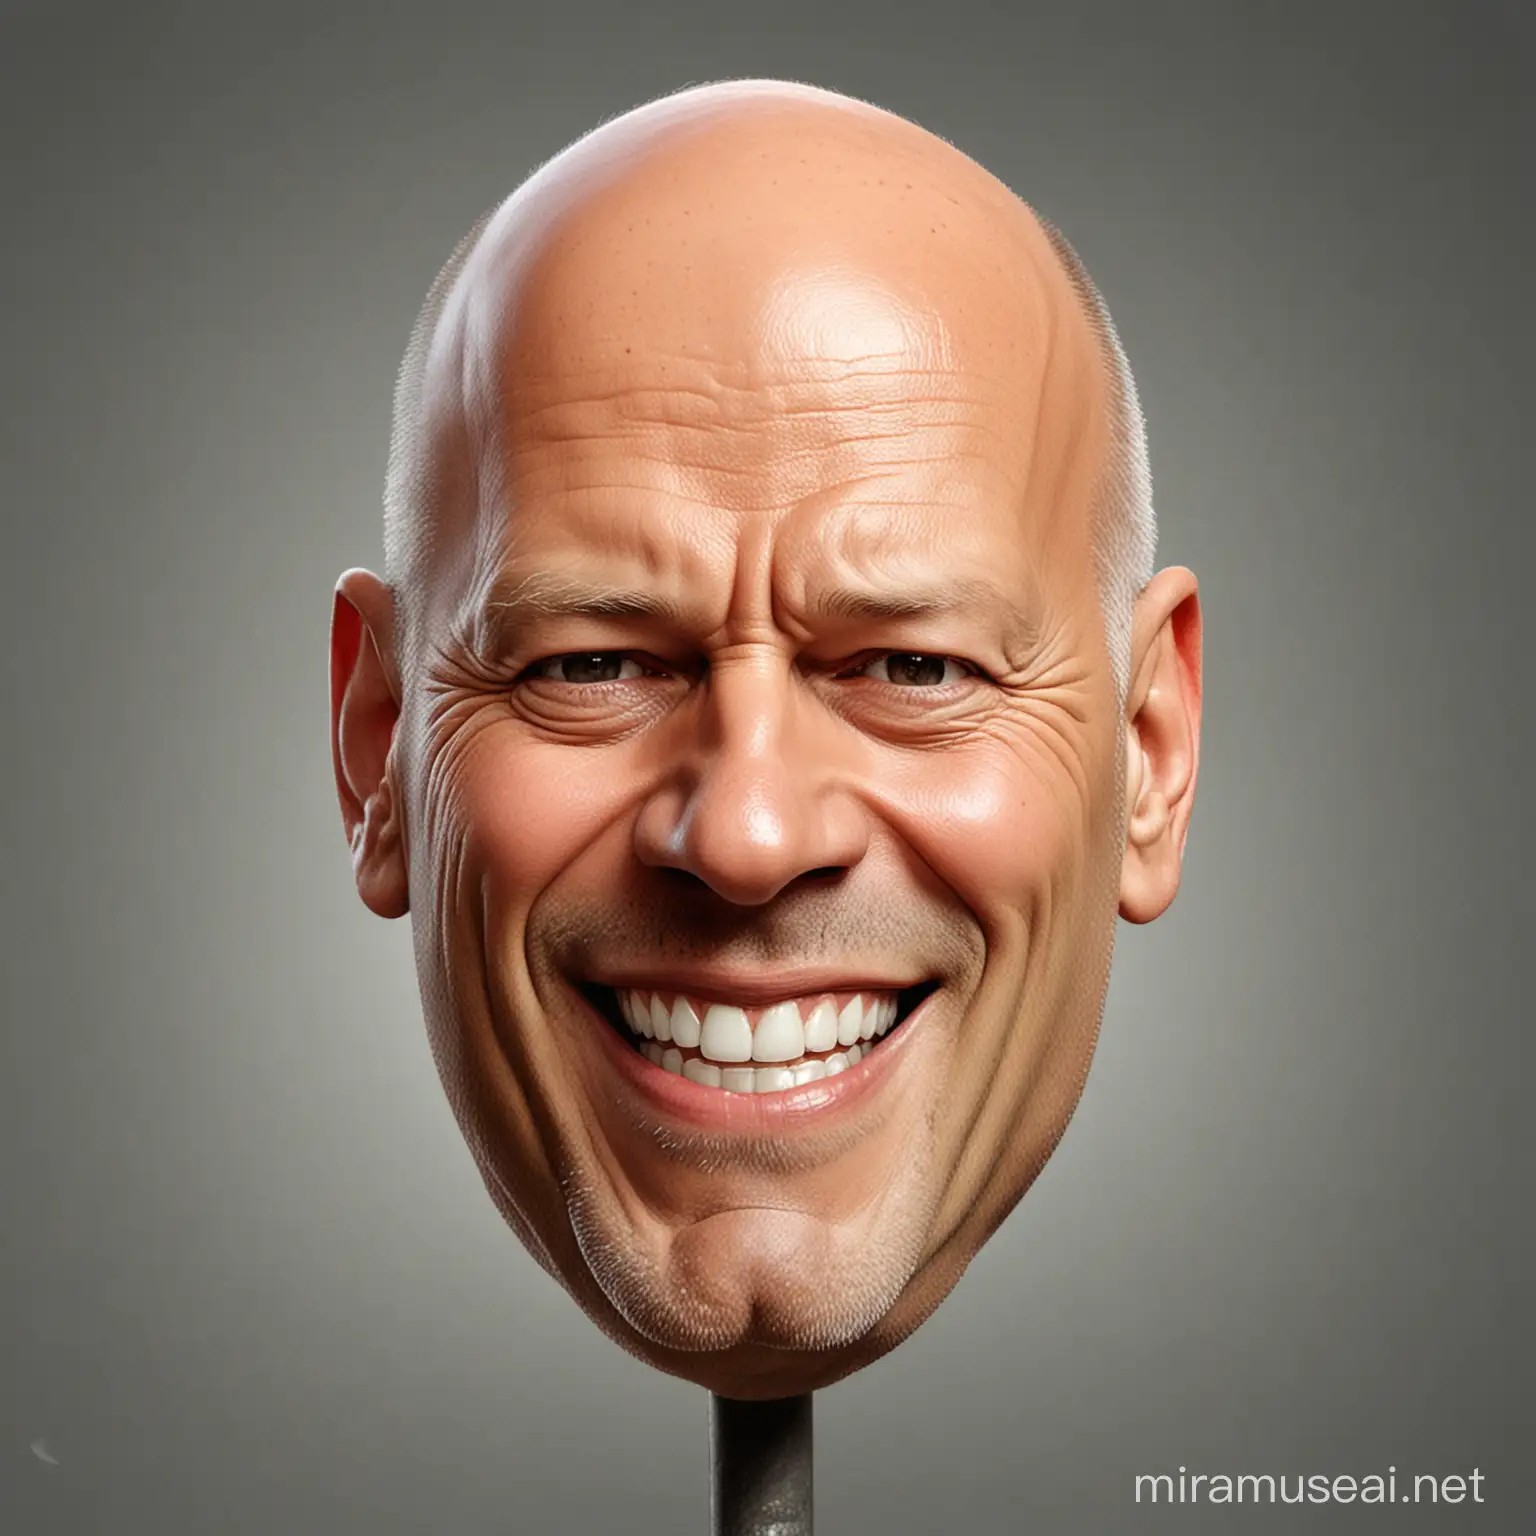 eine Karikatur. Ein Kopf.  Mische the Rock und Bruce Willis. Lächelnd

